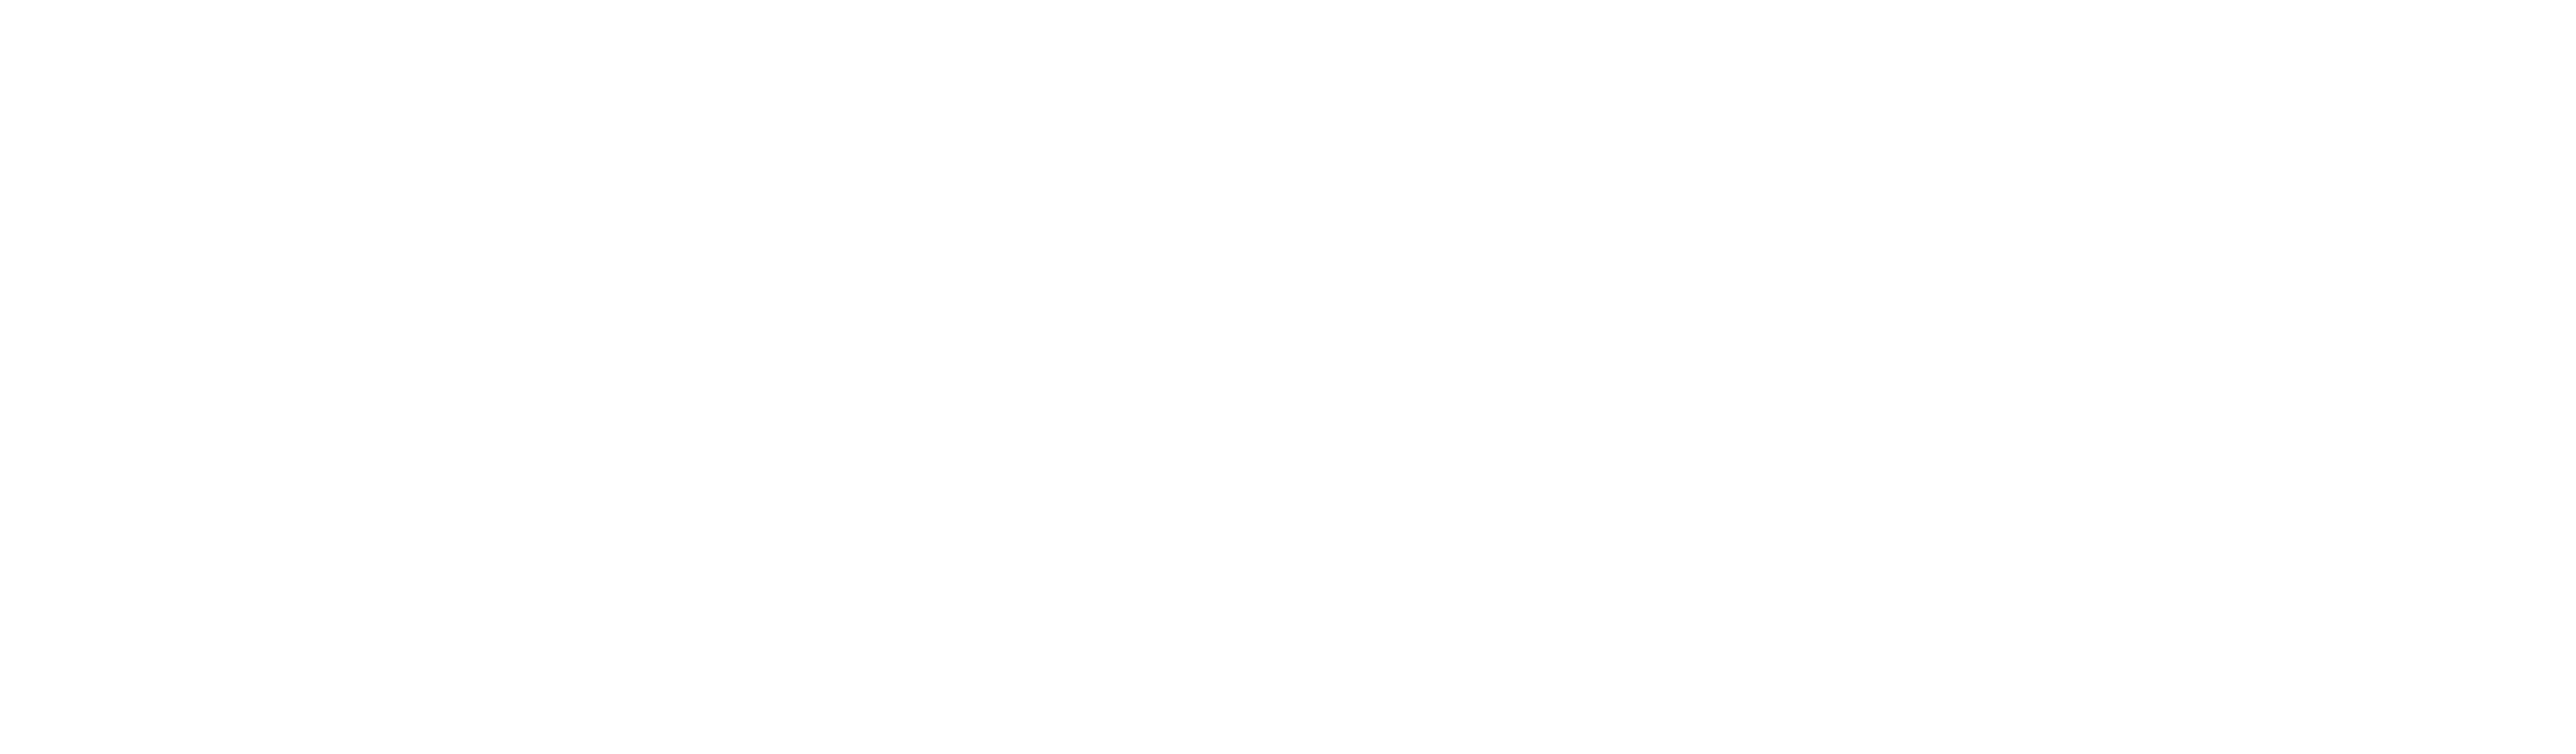 logo star racer